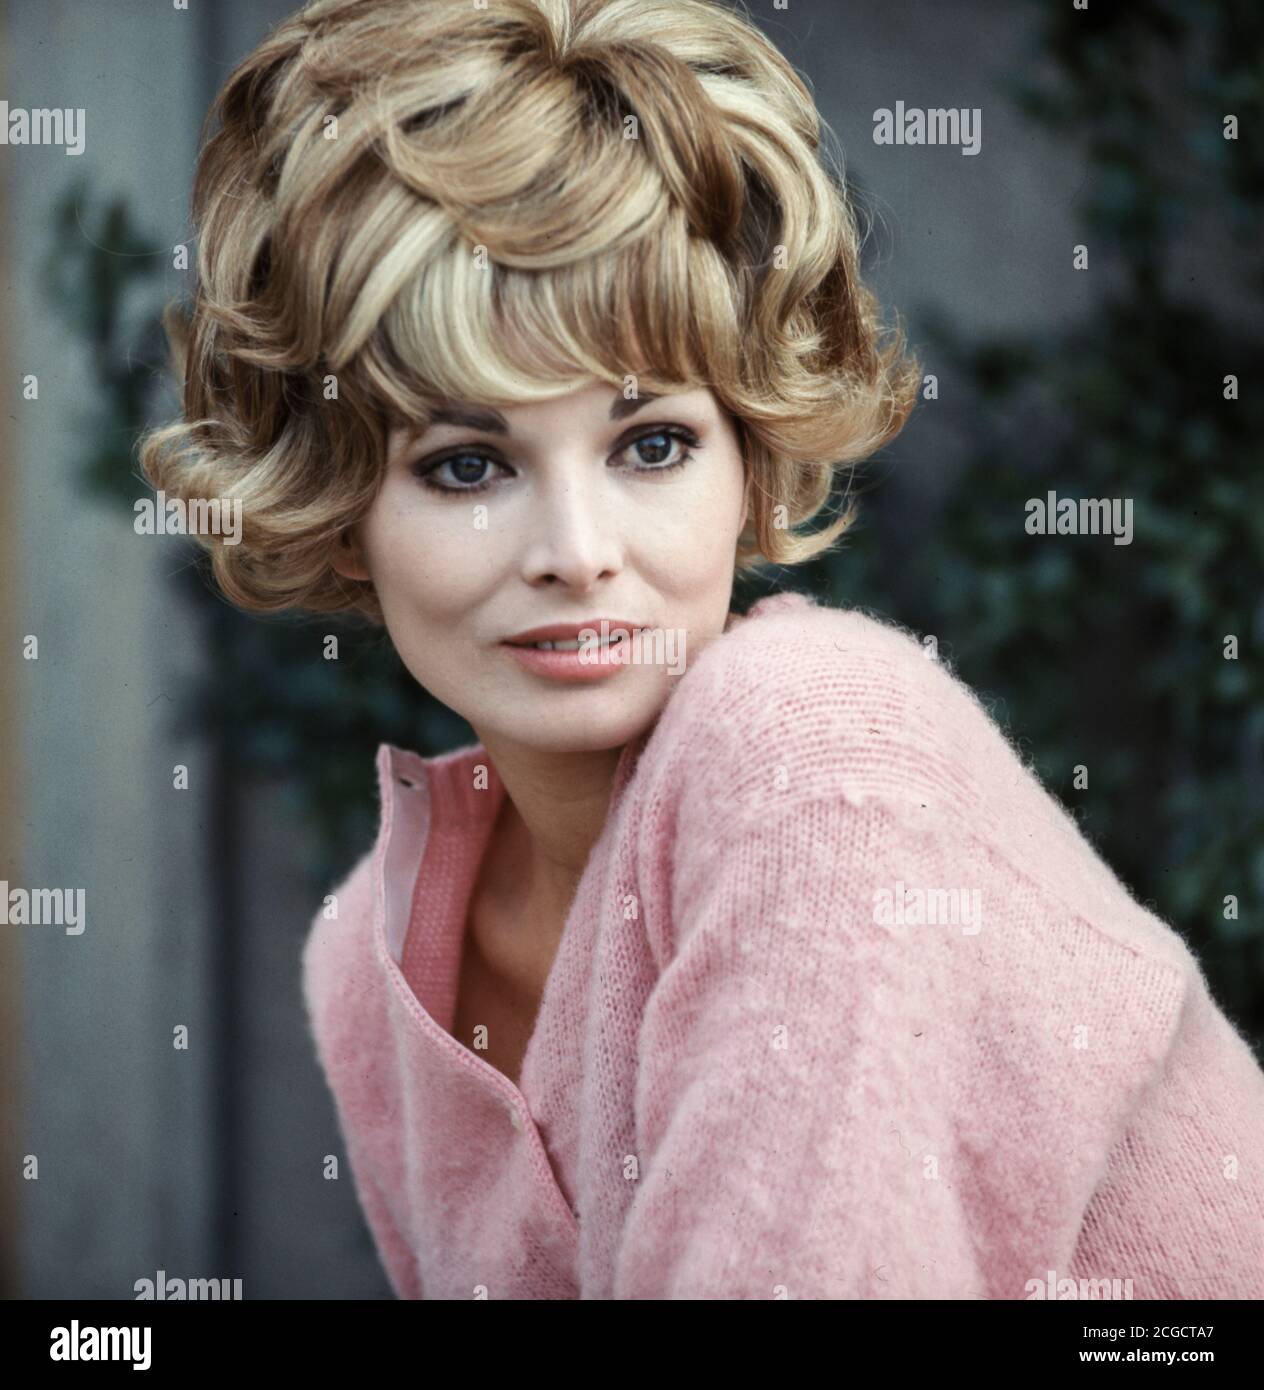 Gabel images scilla Sophia Loren's